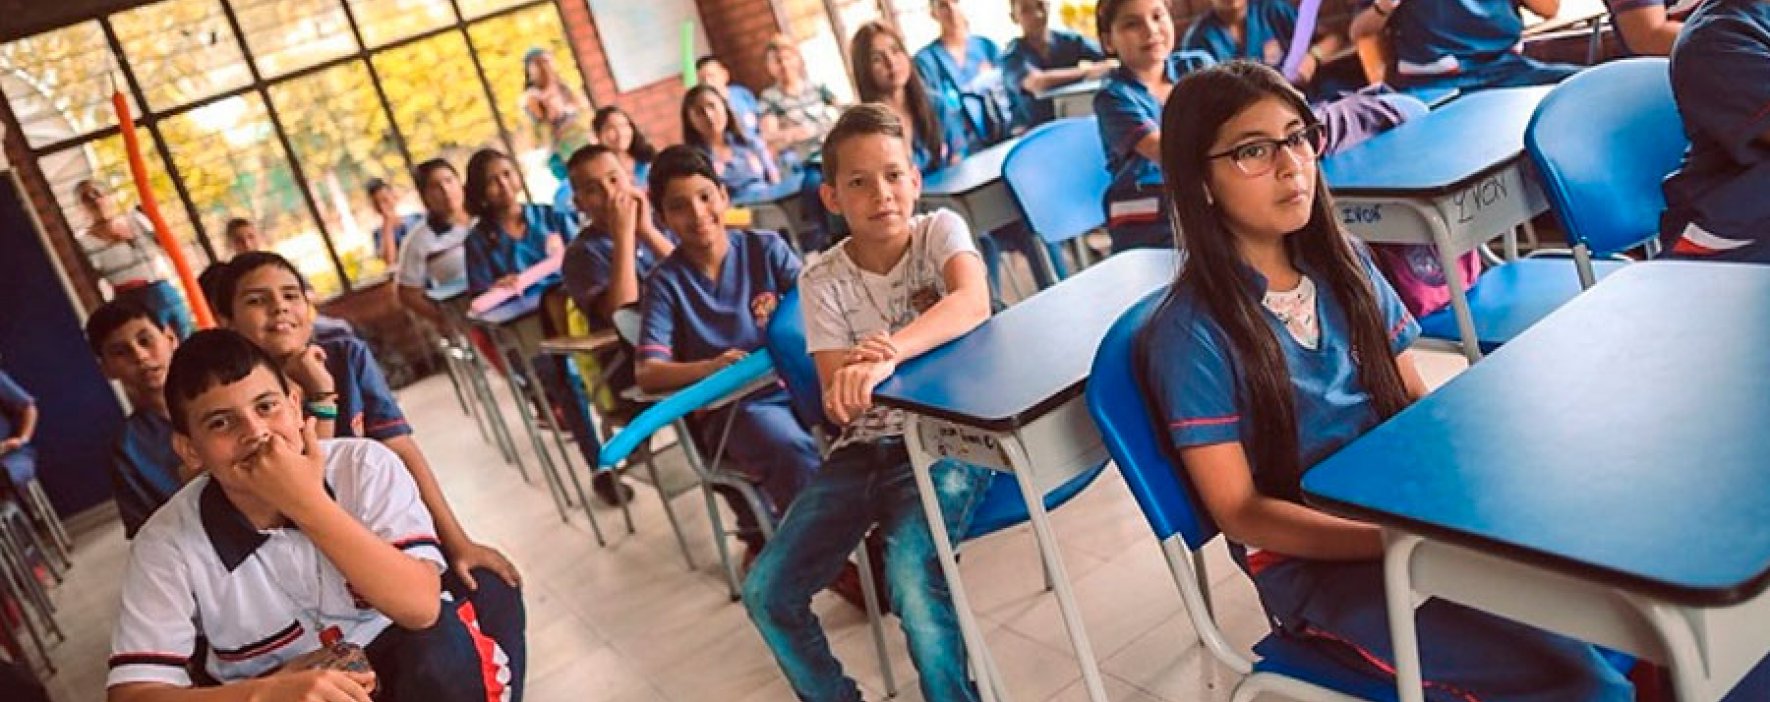 Candelaria, Valle del Cauca, estrenará colegio para Jornada única